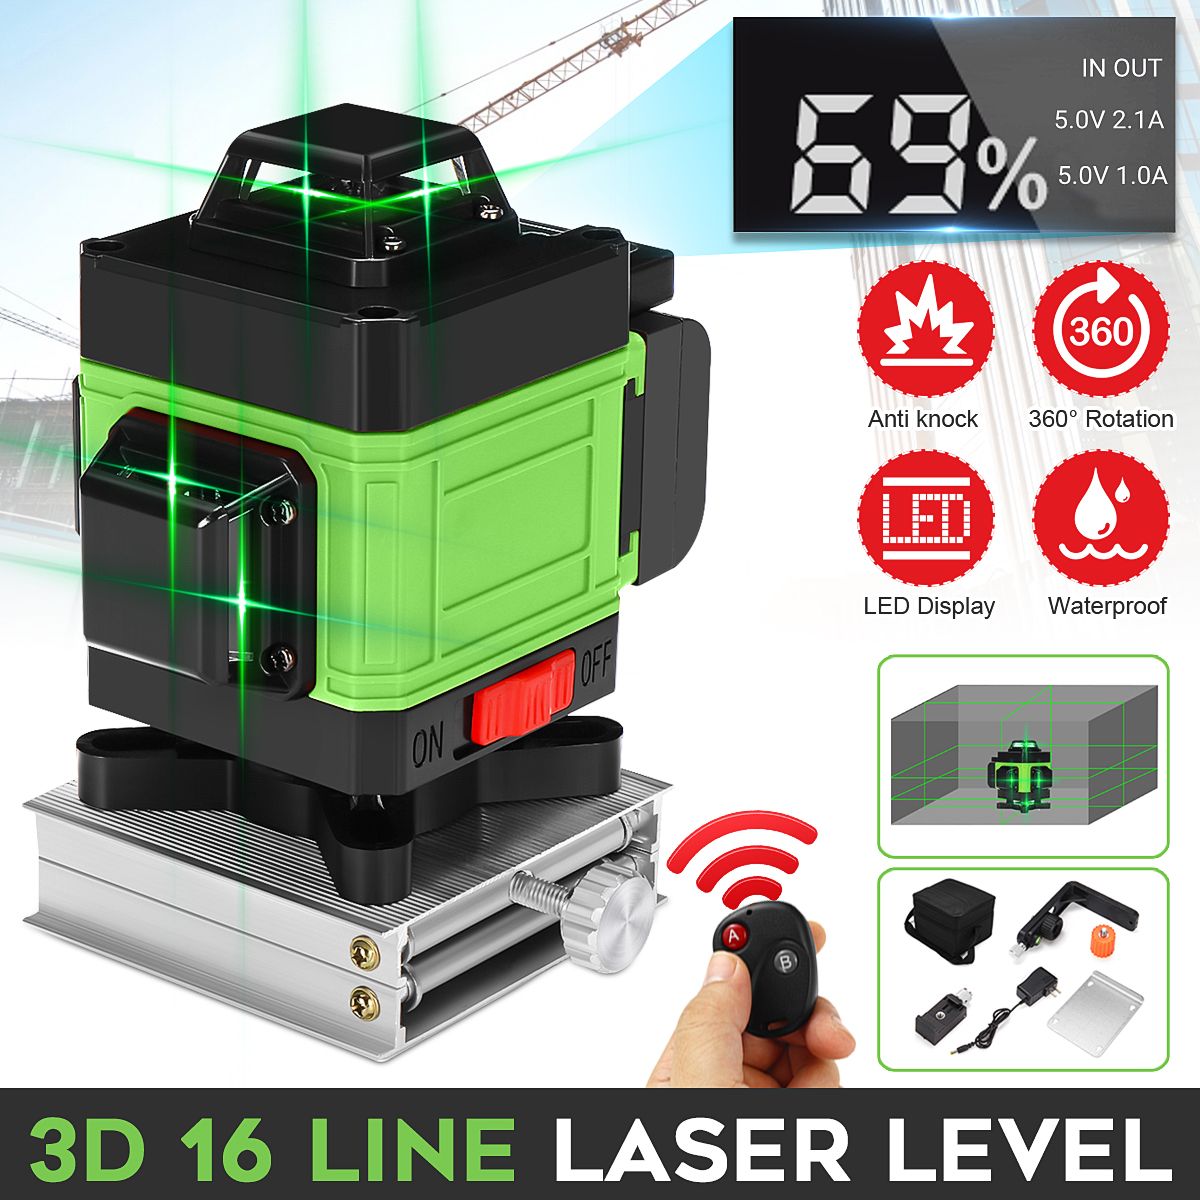 LED-Display-3D-360deg-16-Line-Green-Light-Laser-Level-Cross-Self-Leveling-Measure-Tool-1700669